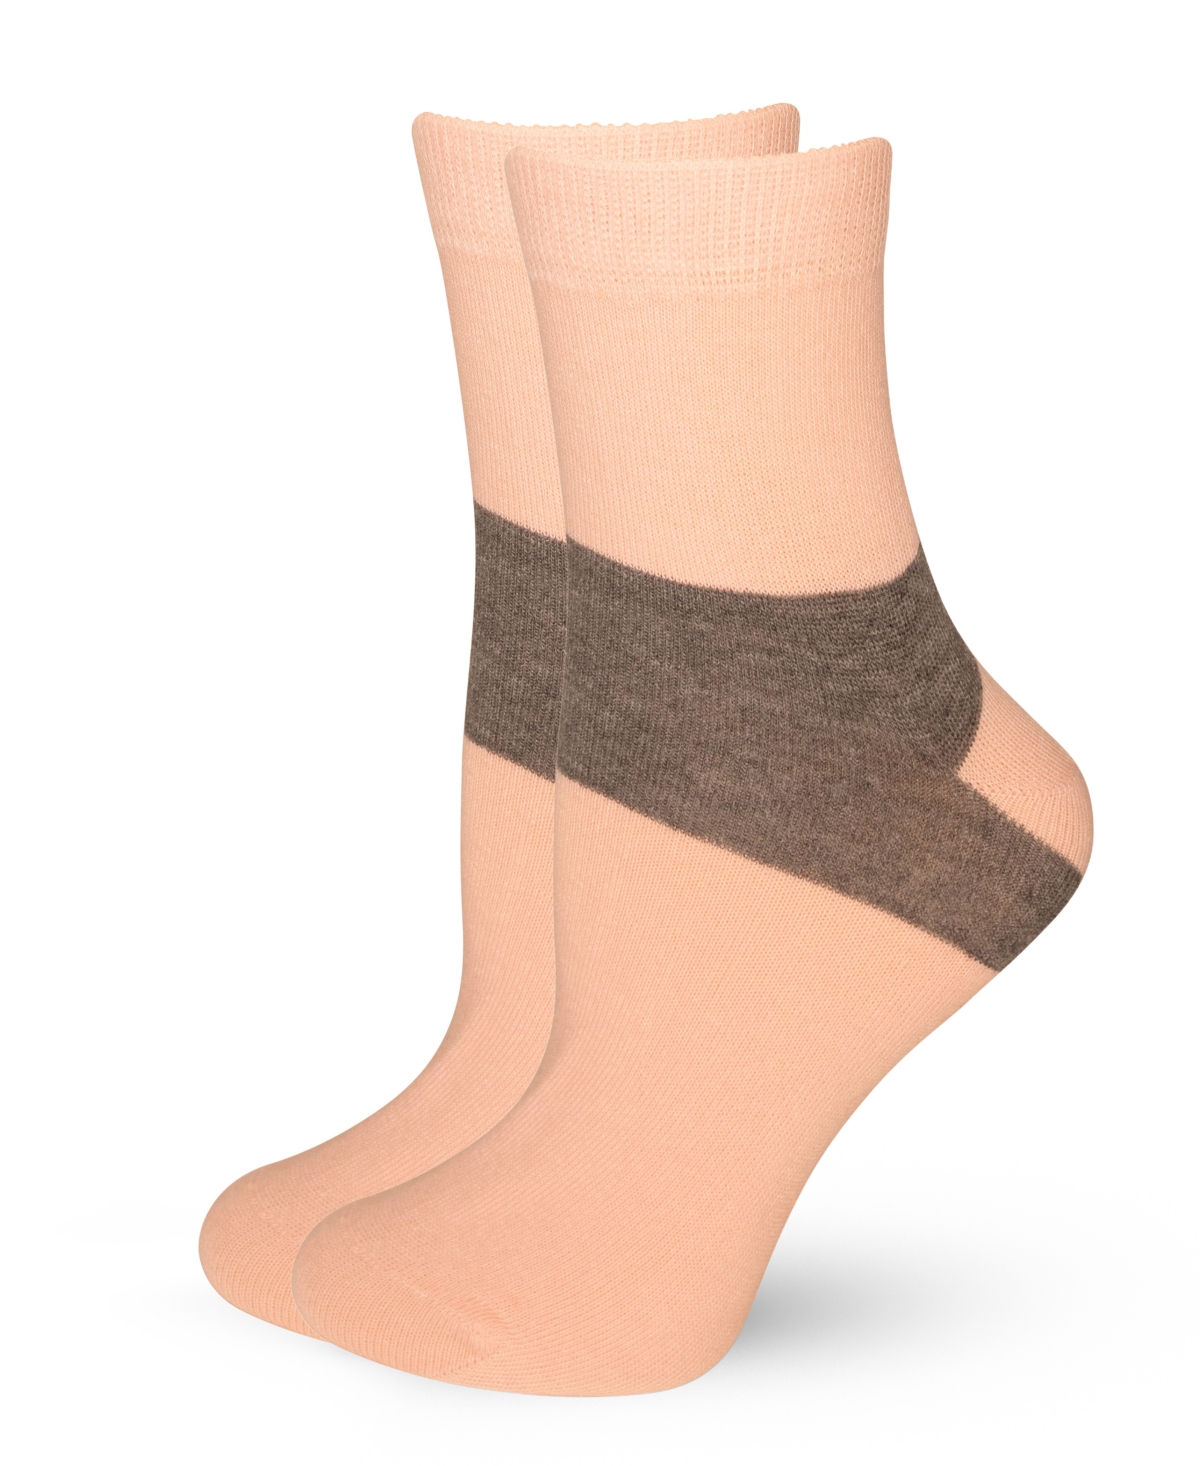 Lechery Women's European Made Heel-stripe Pattern Cotton Socks In Multicolor